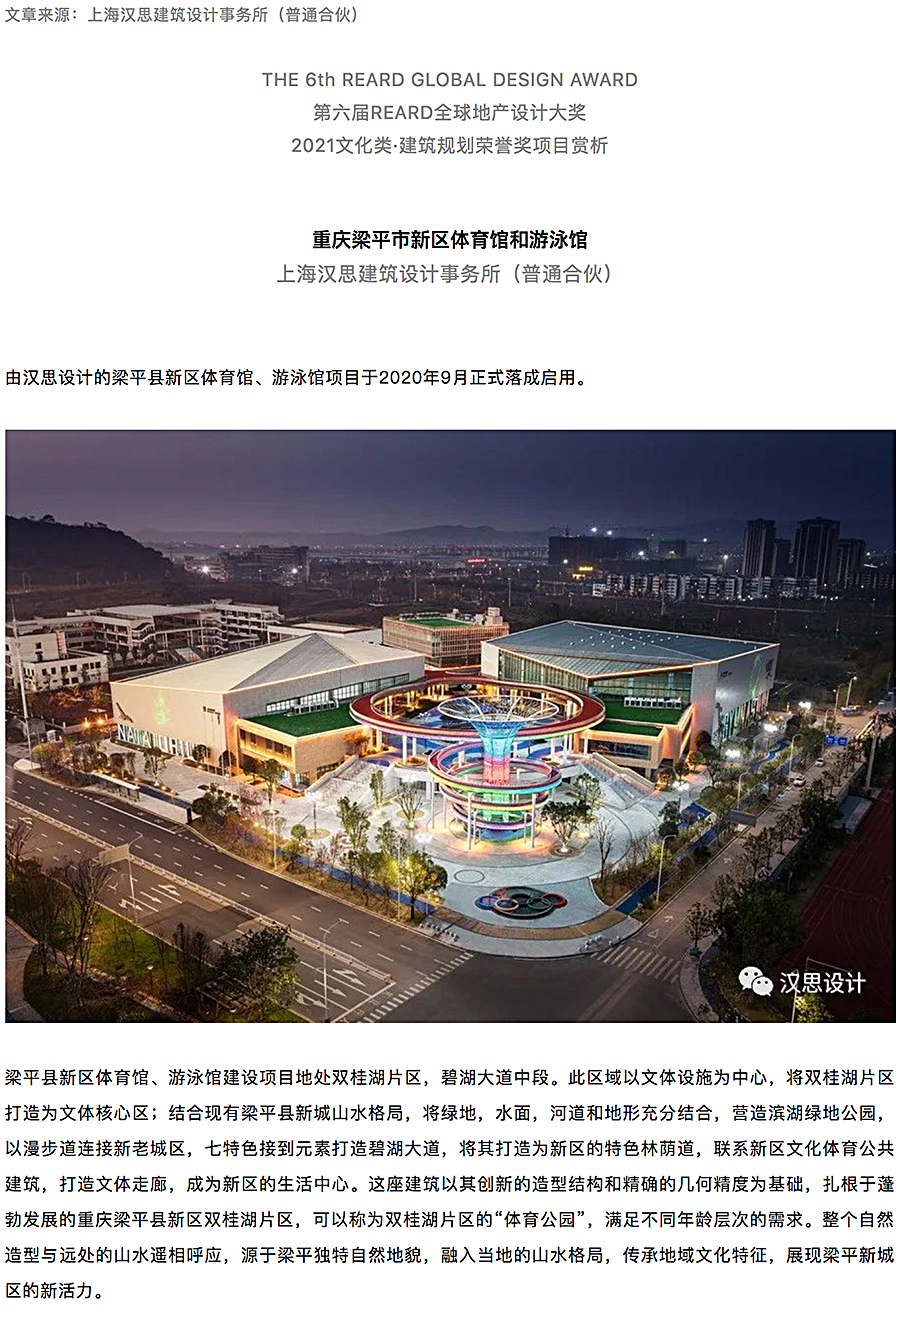 重庆梁平市新区体育馆和游泳馆_0000_图层-1.jpg